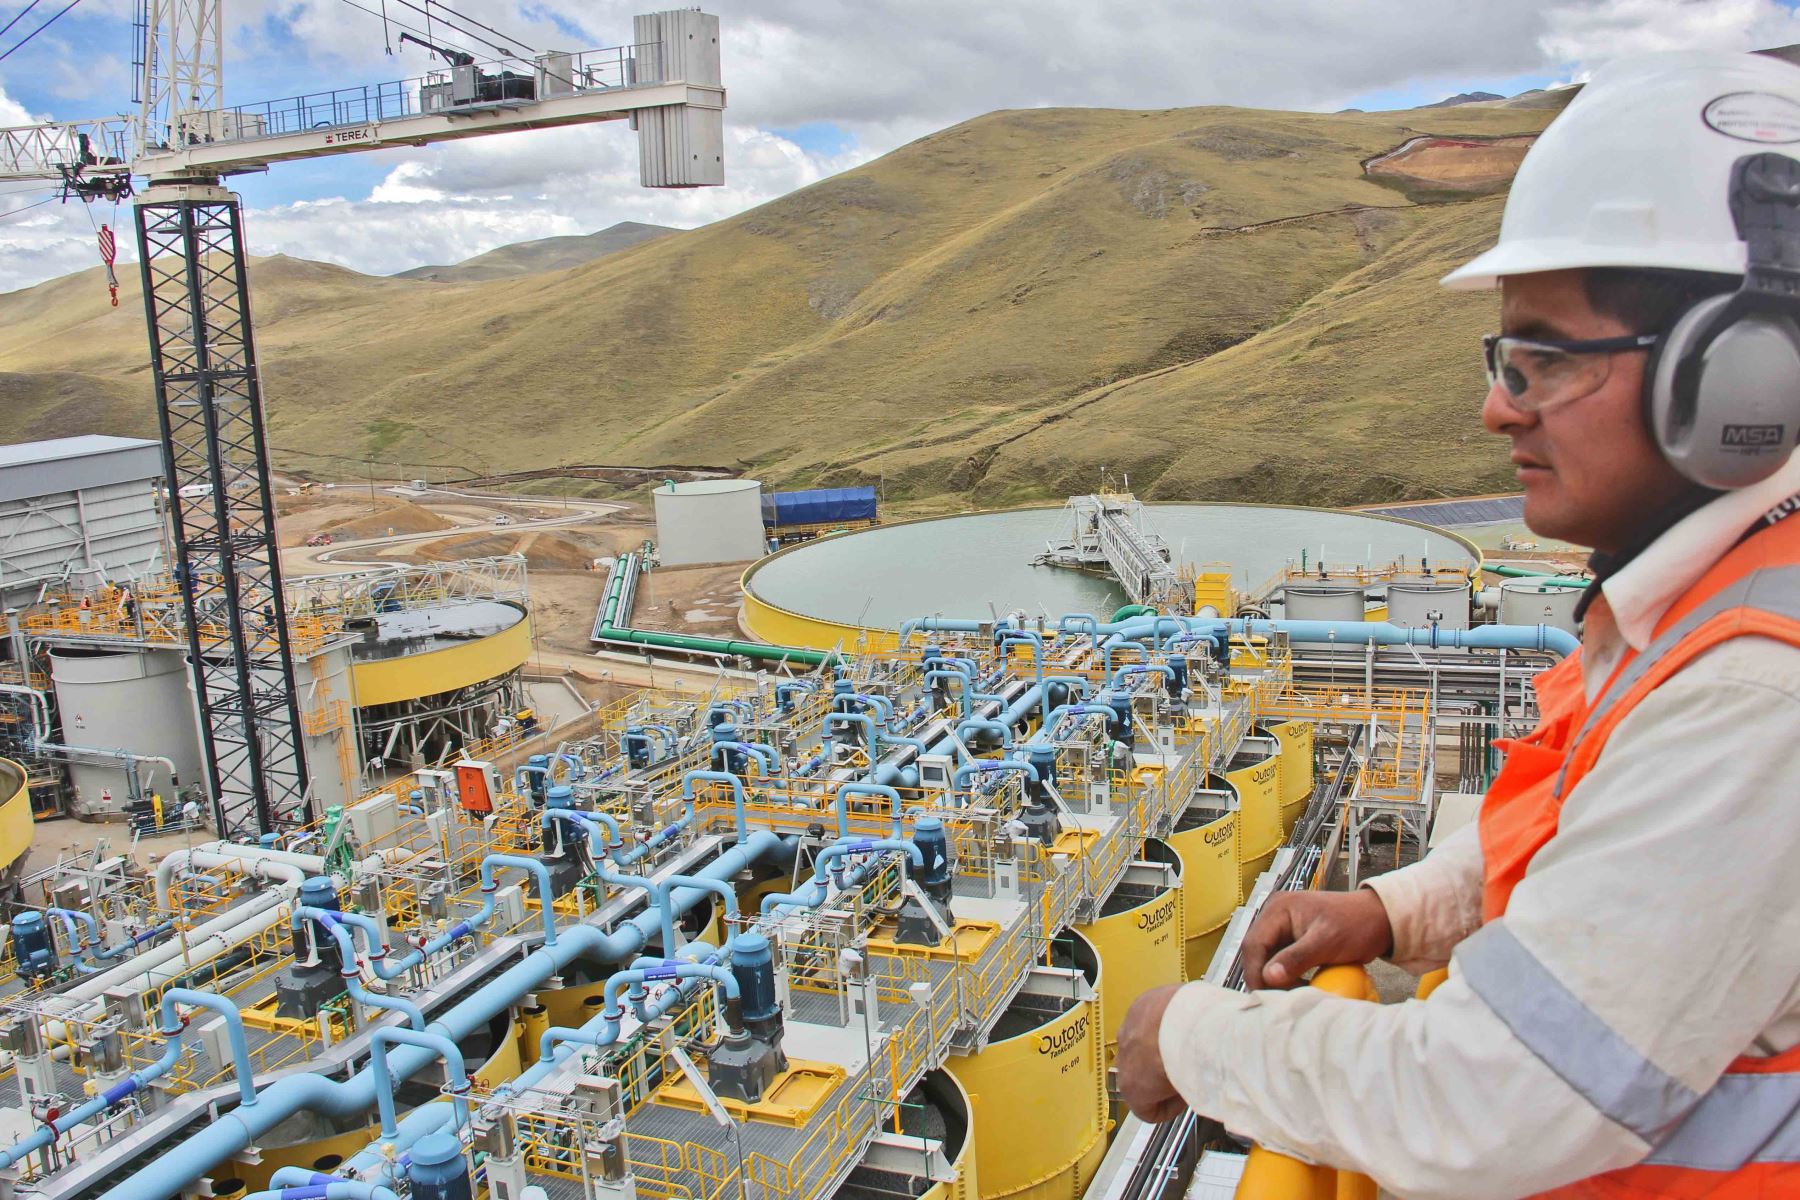 Seminario aborda los avances y tendencias de la minería sostenible en Perú